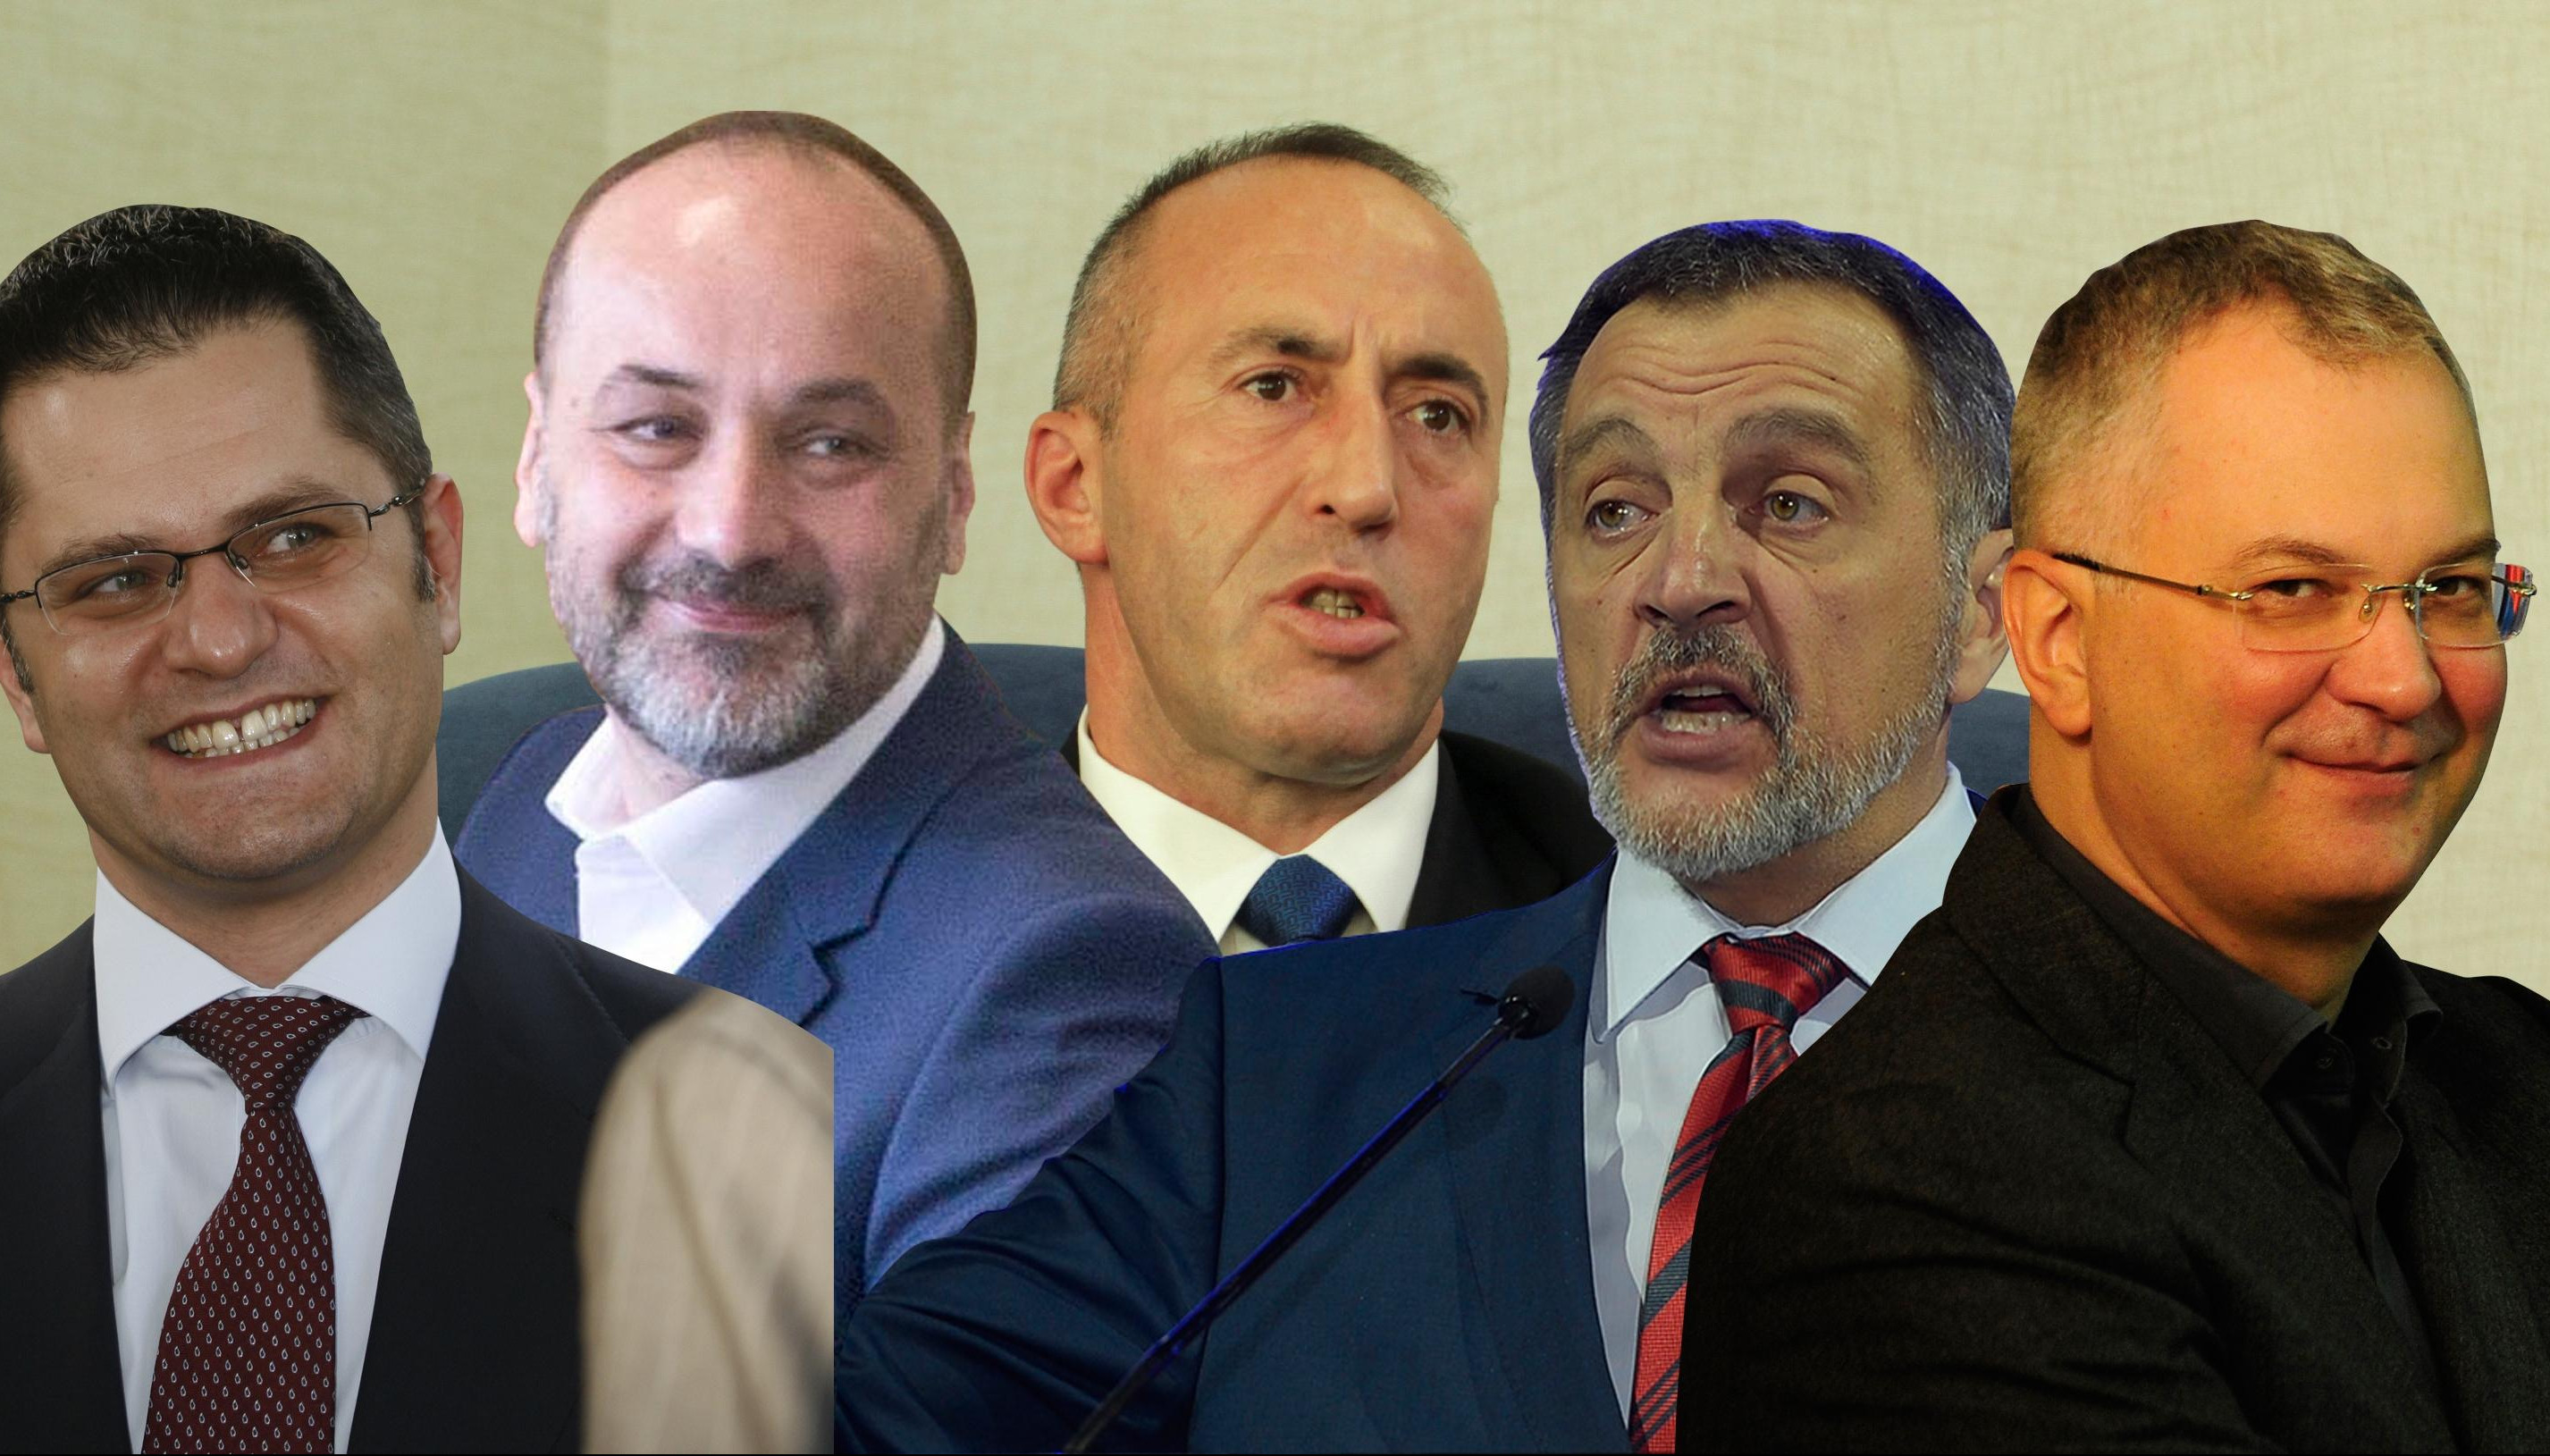 USPELI DA SE UJEDINE! Stali zajedno sa Ramušom Haradinajem protiv Srbije i Srpske liste!